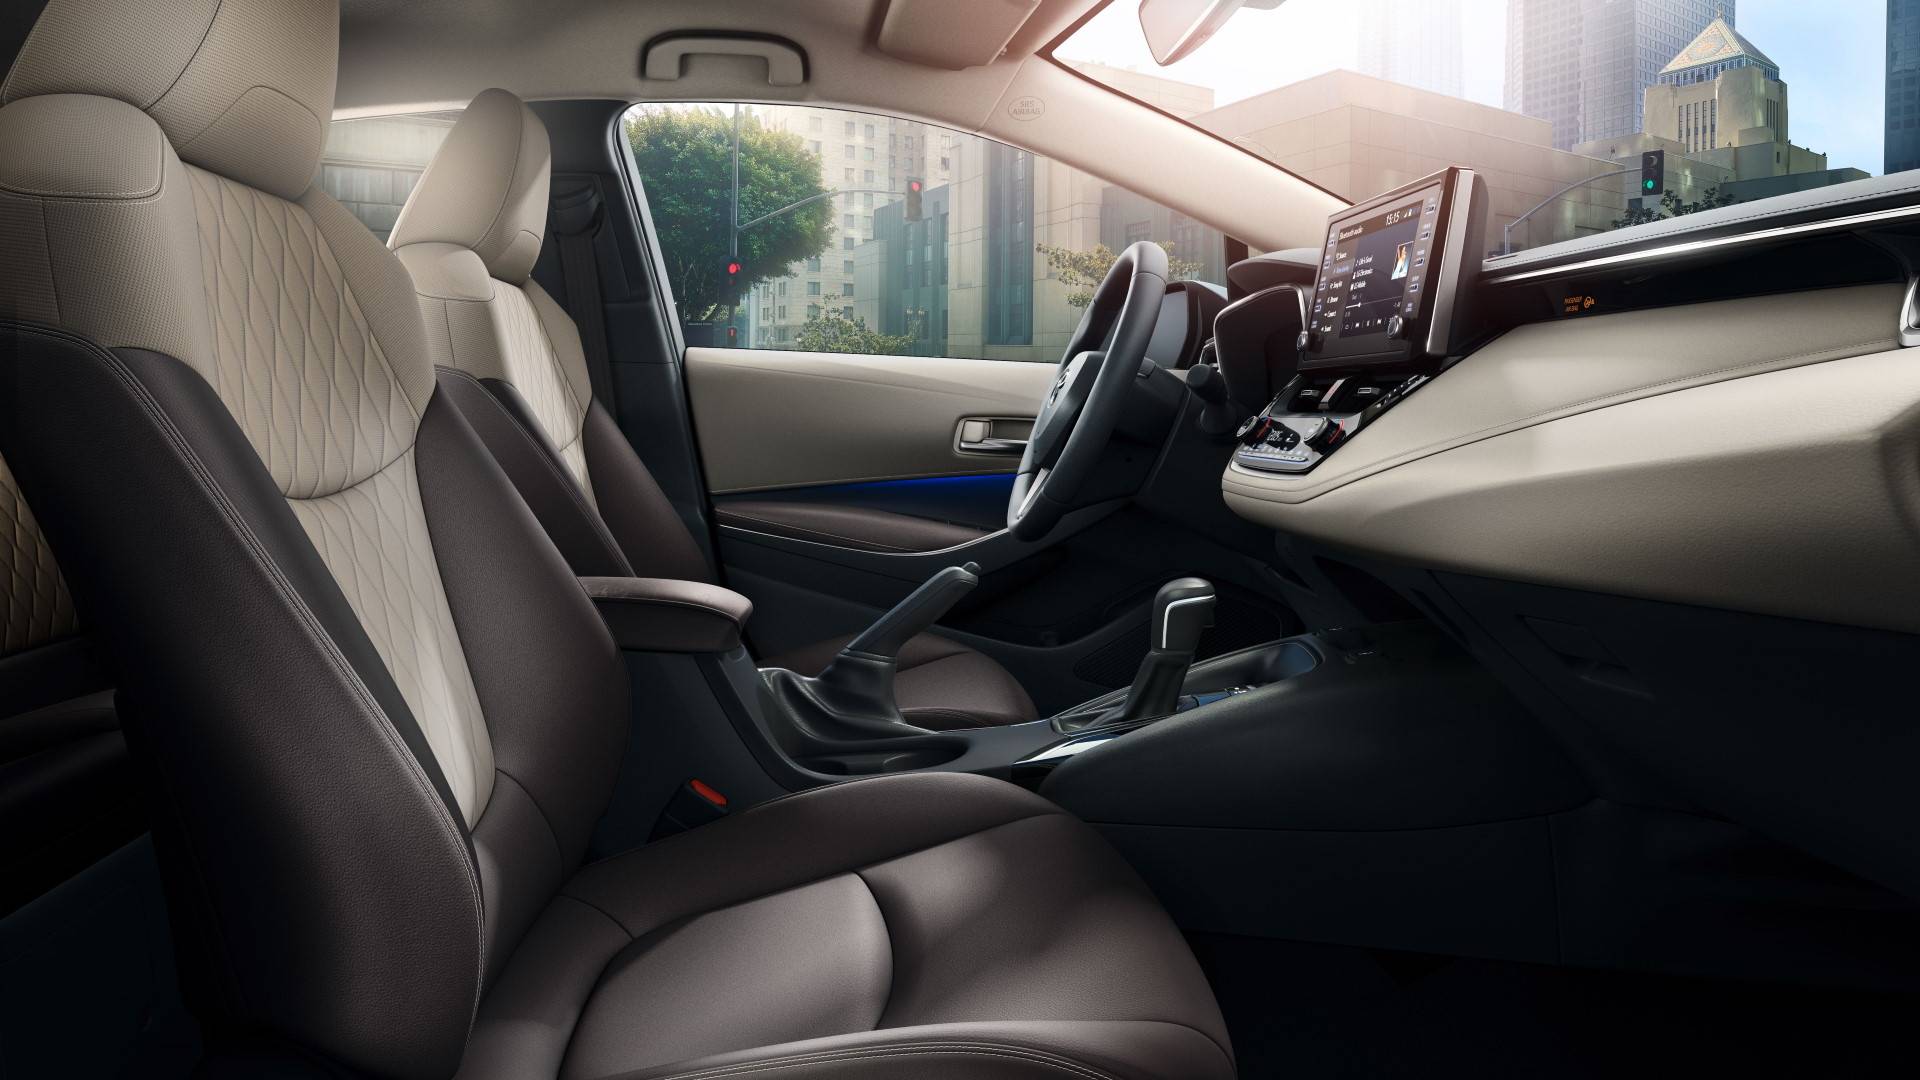 Обзор салона седана Toyota Corolla 2020